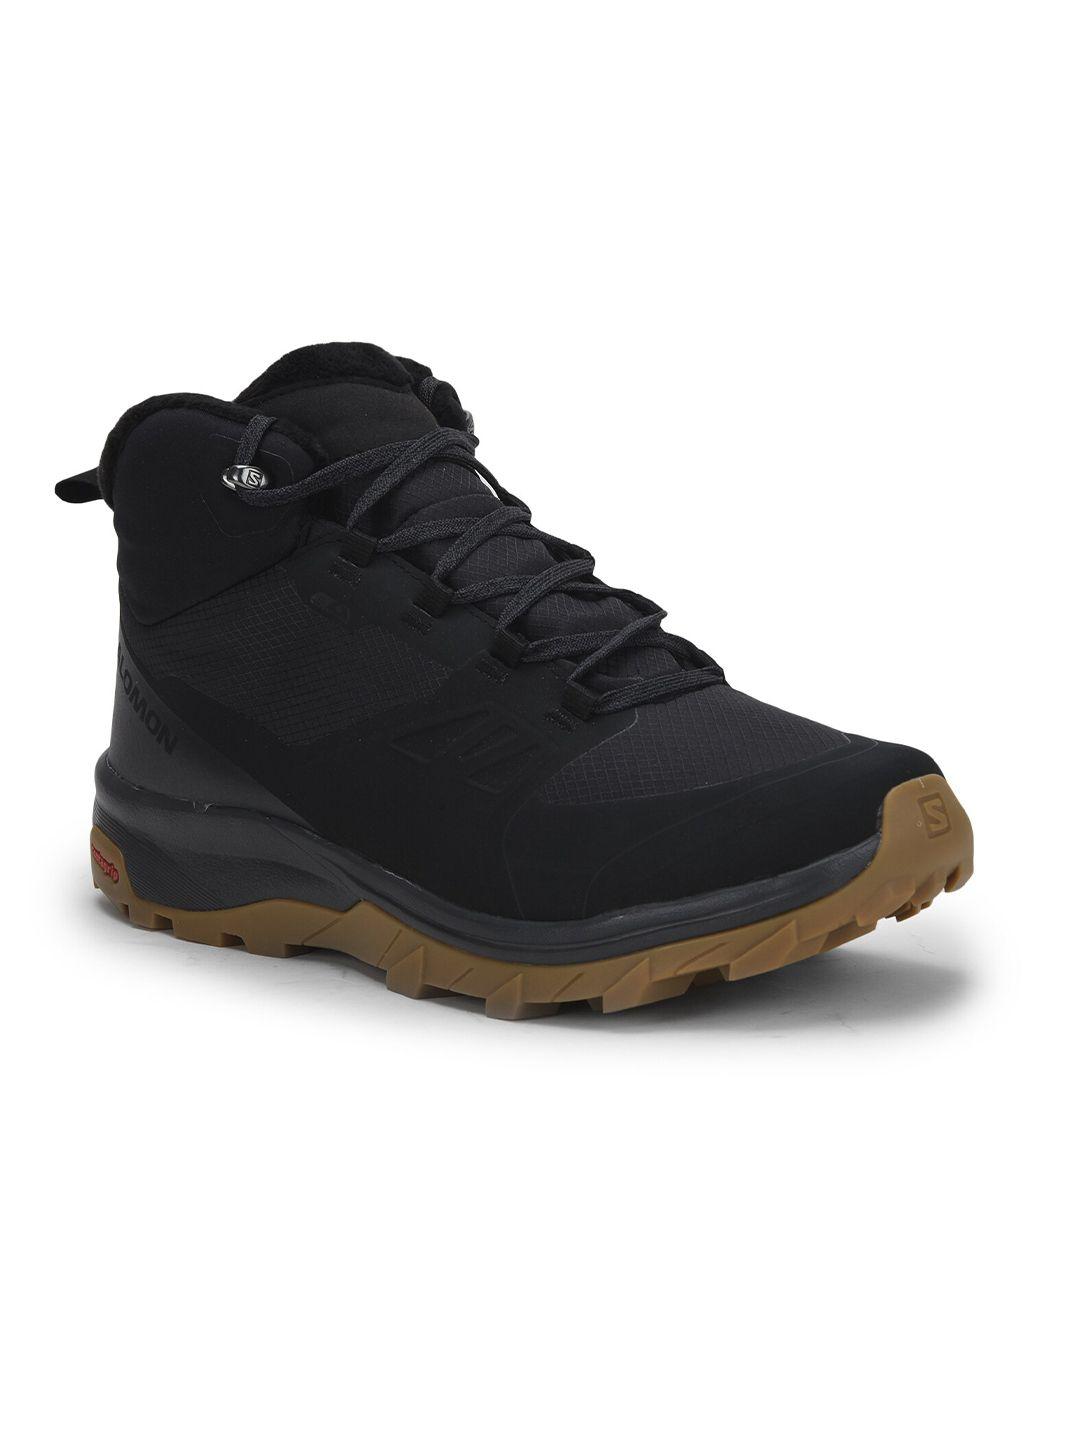 salomon-men-black-textile-trekking-shoes